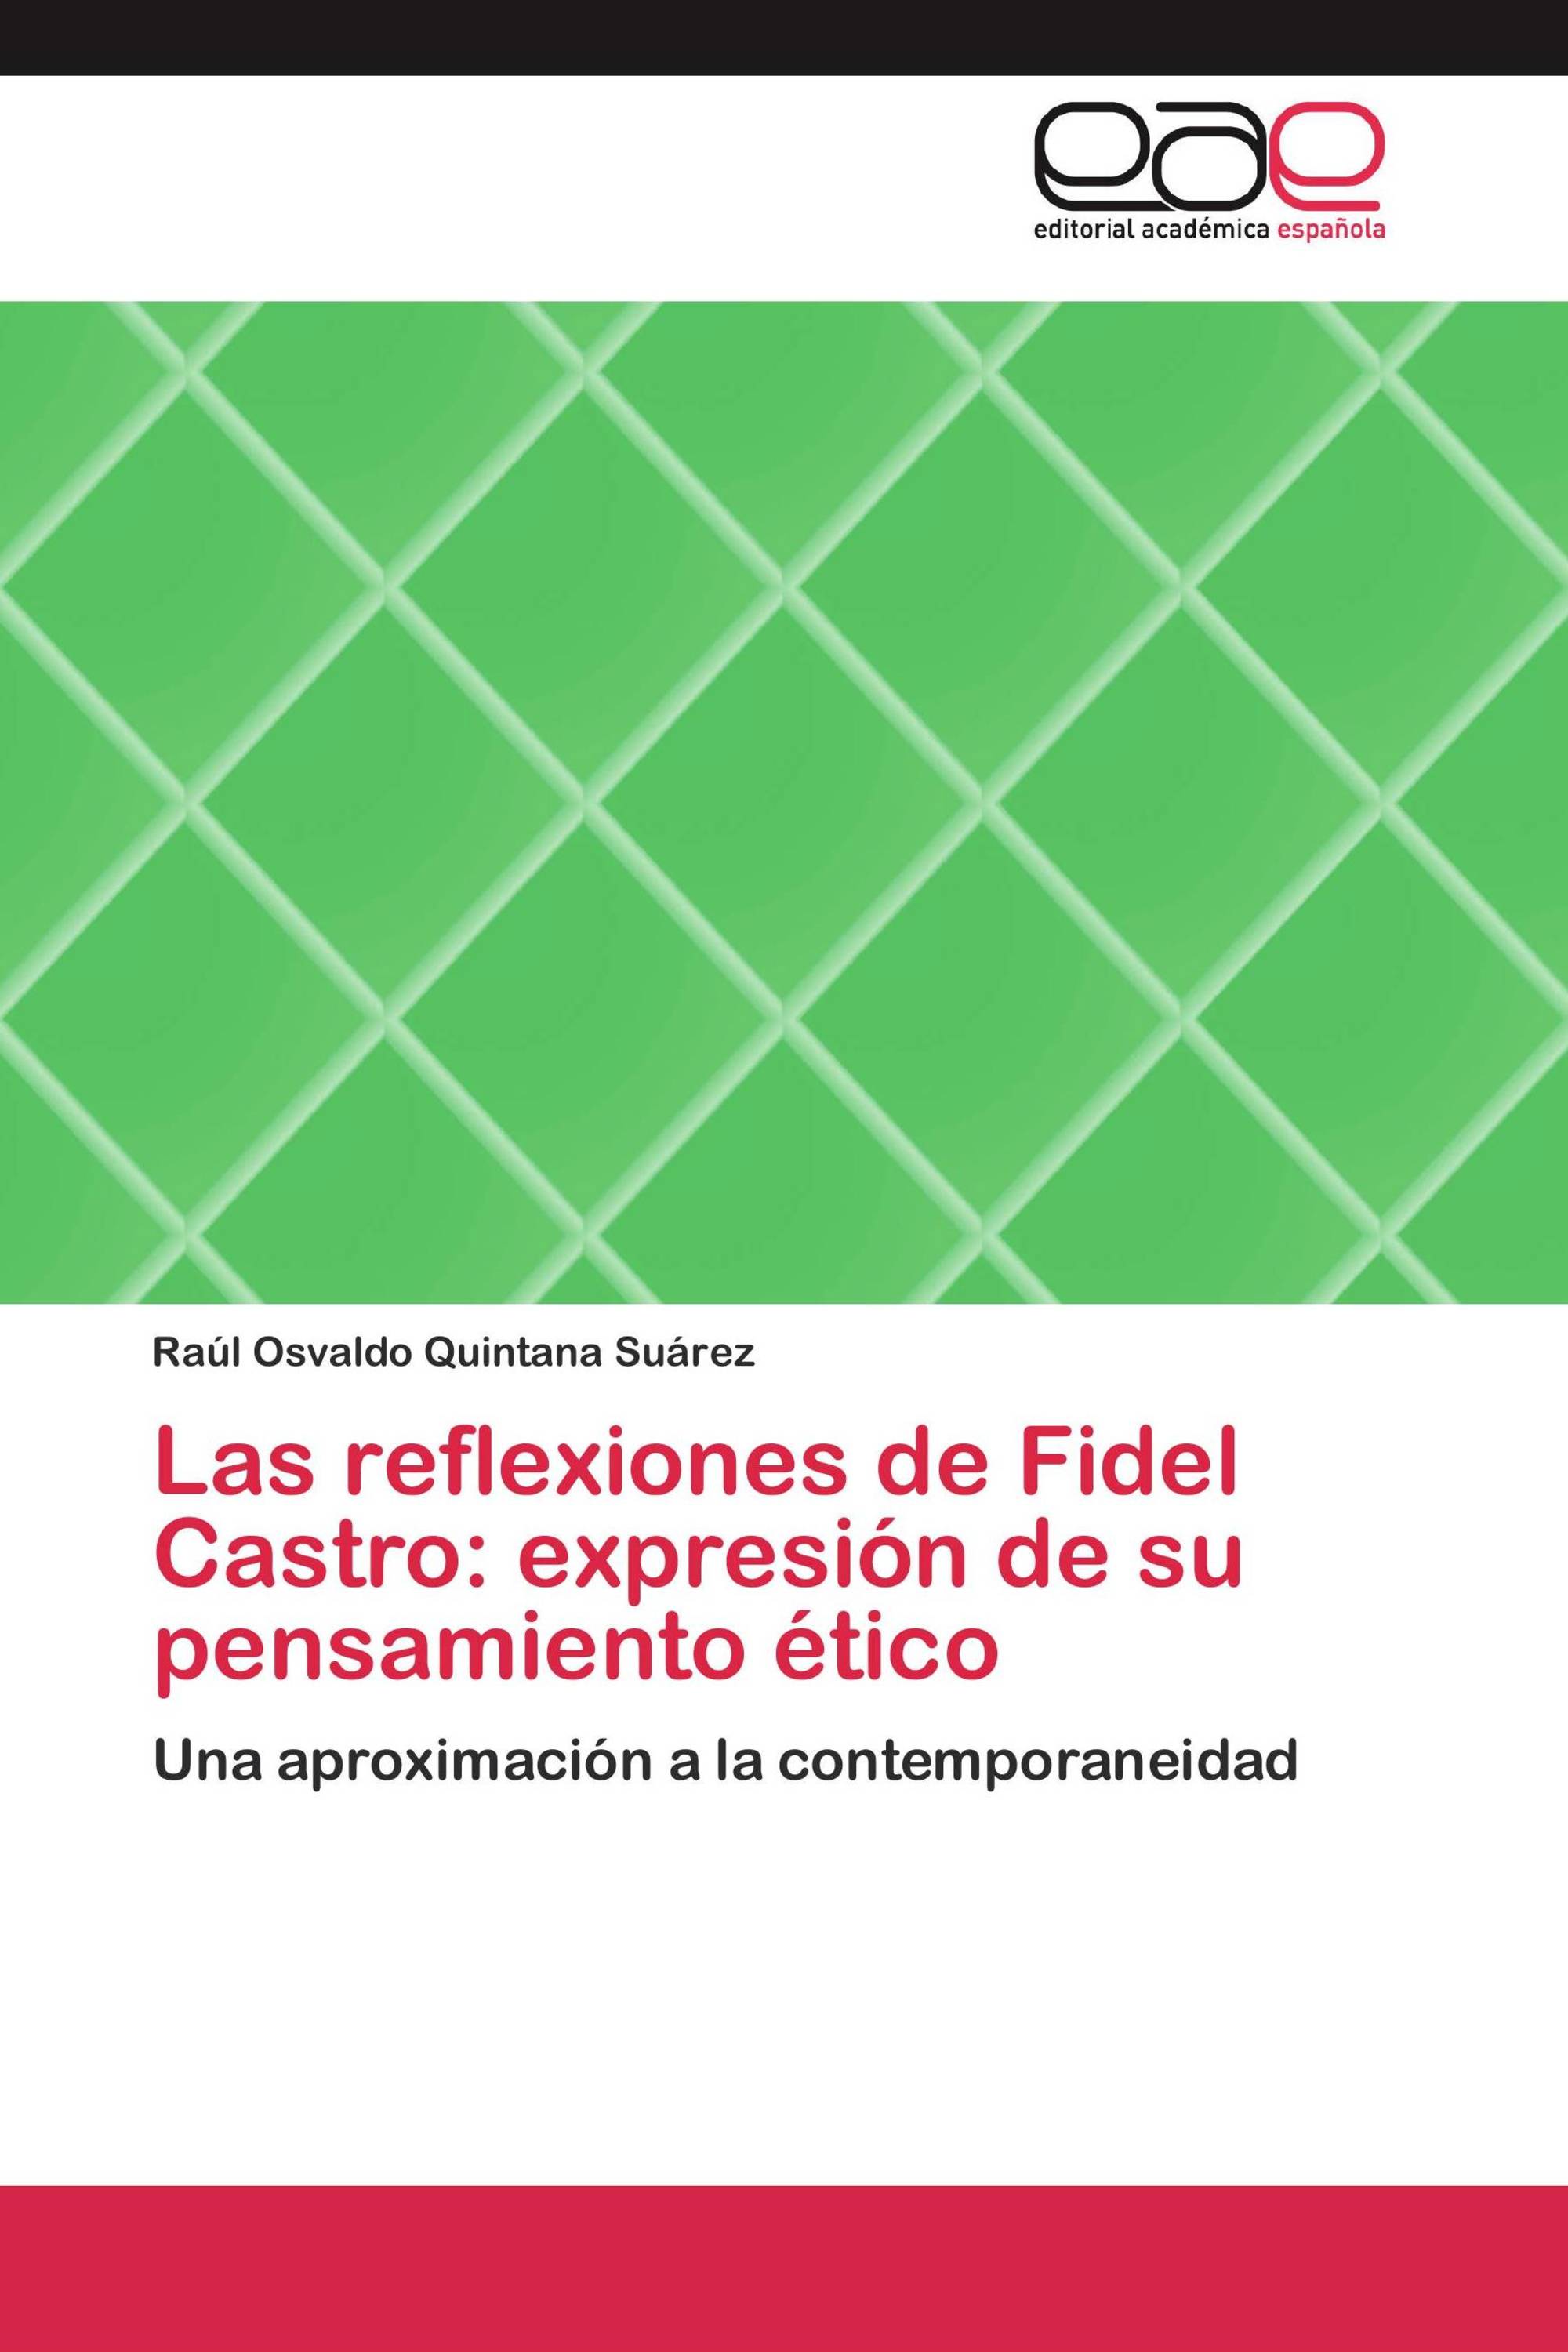 Las reflexiones de Fidel Castro: expresión de su pensamiento ético